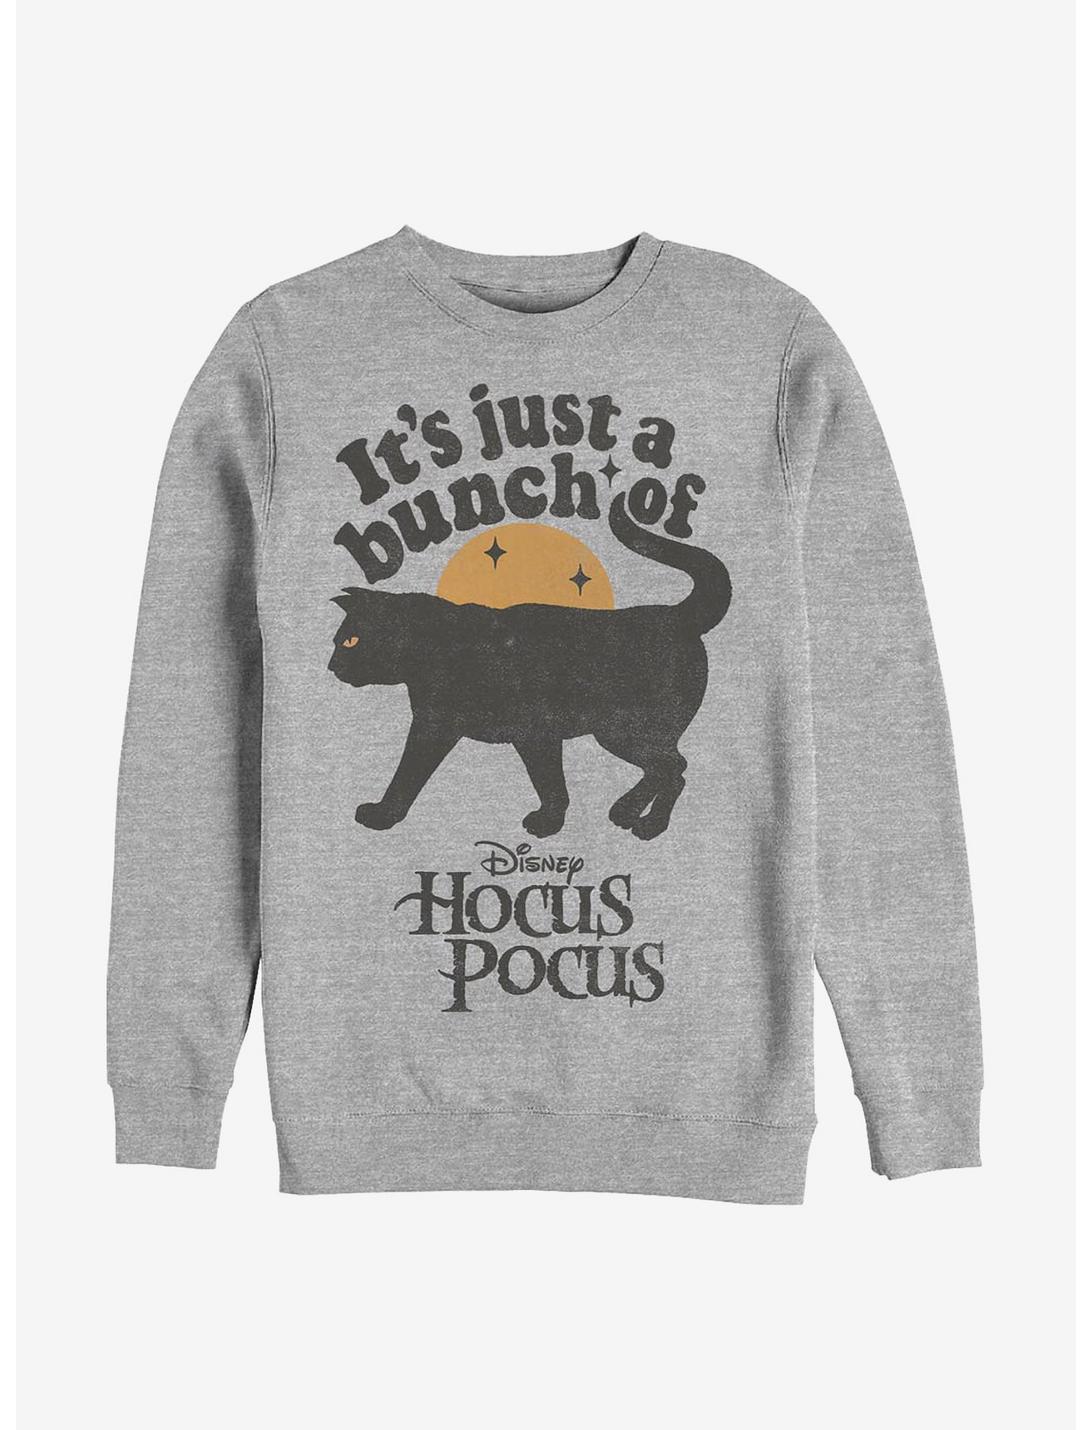 Disney Hocus Pocus Just A Bunch Of Hocus Pocus Crew Sweatshirt, ATH HTR, hi-res